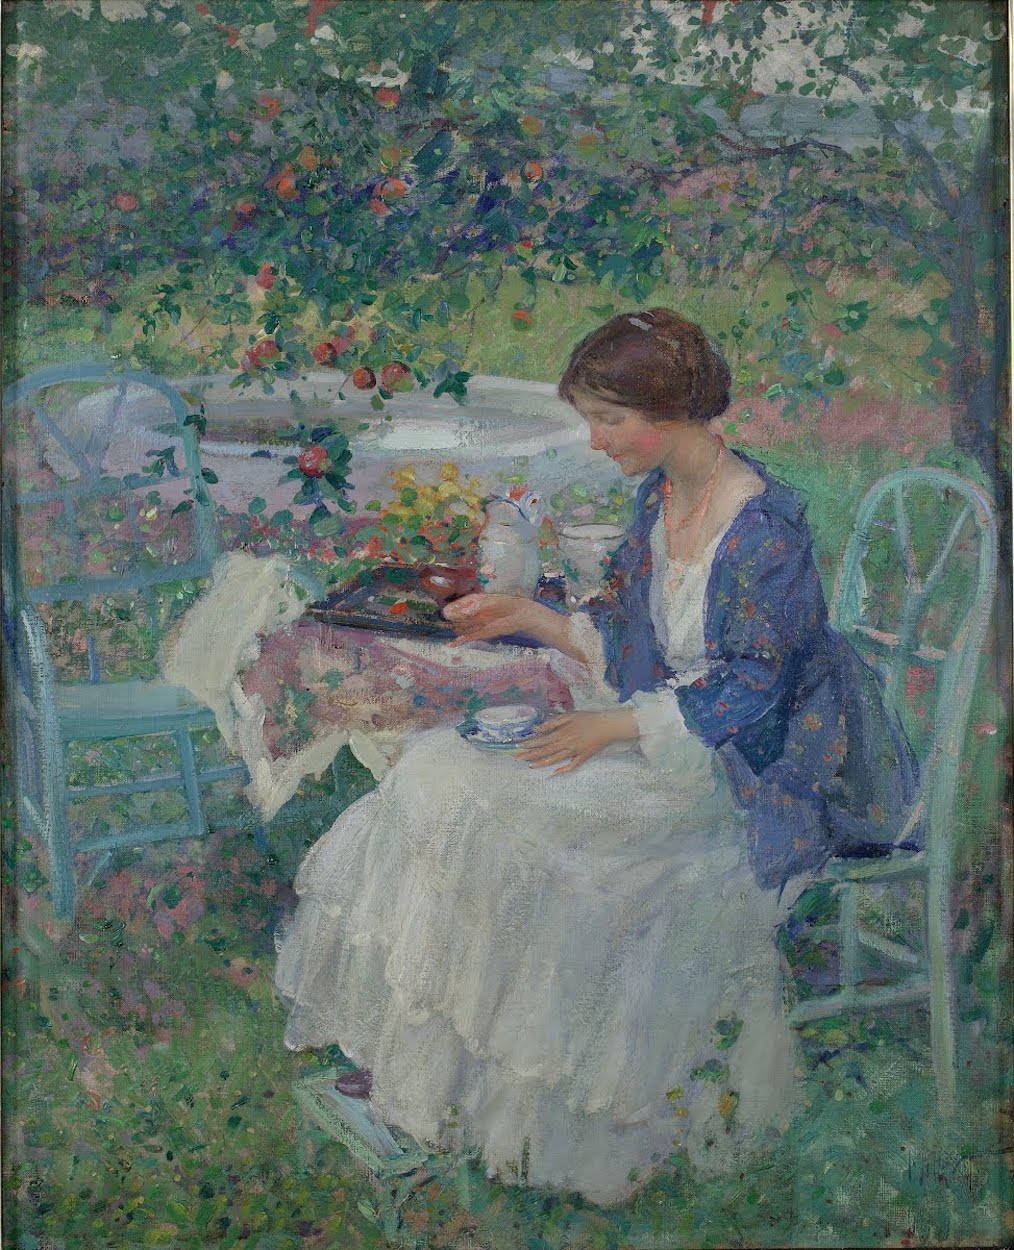 曇りの日 by Richard E. Miller - 1910/1911年 - 99.69 x 80.33 cm 